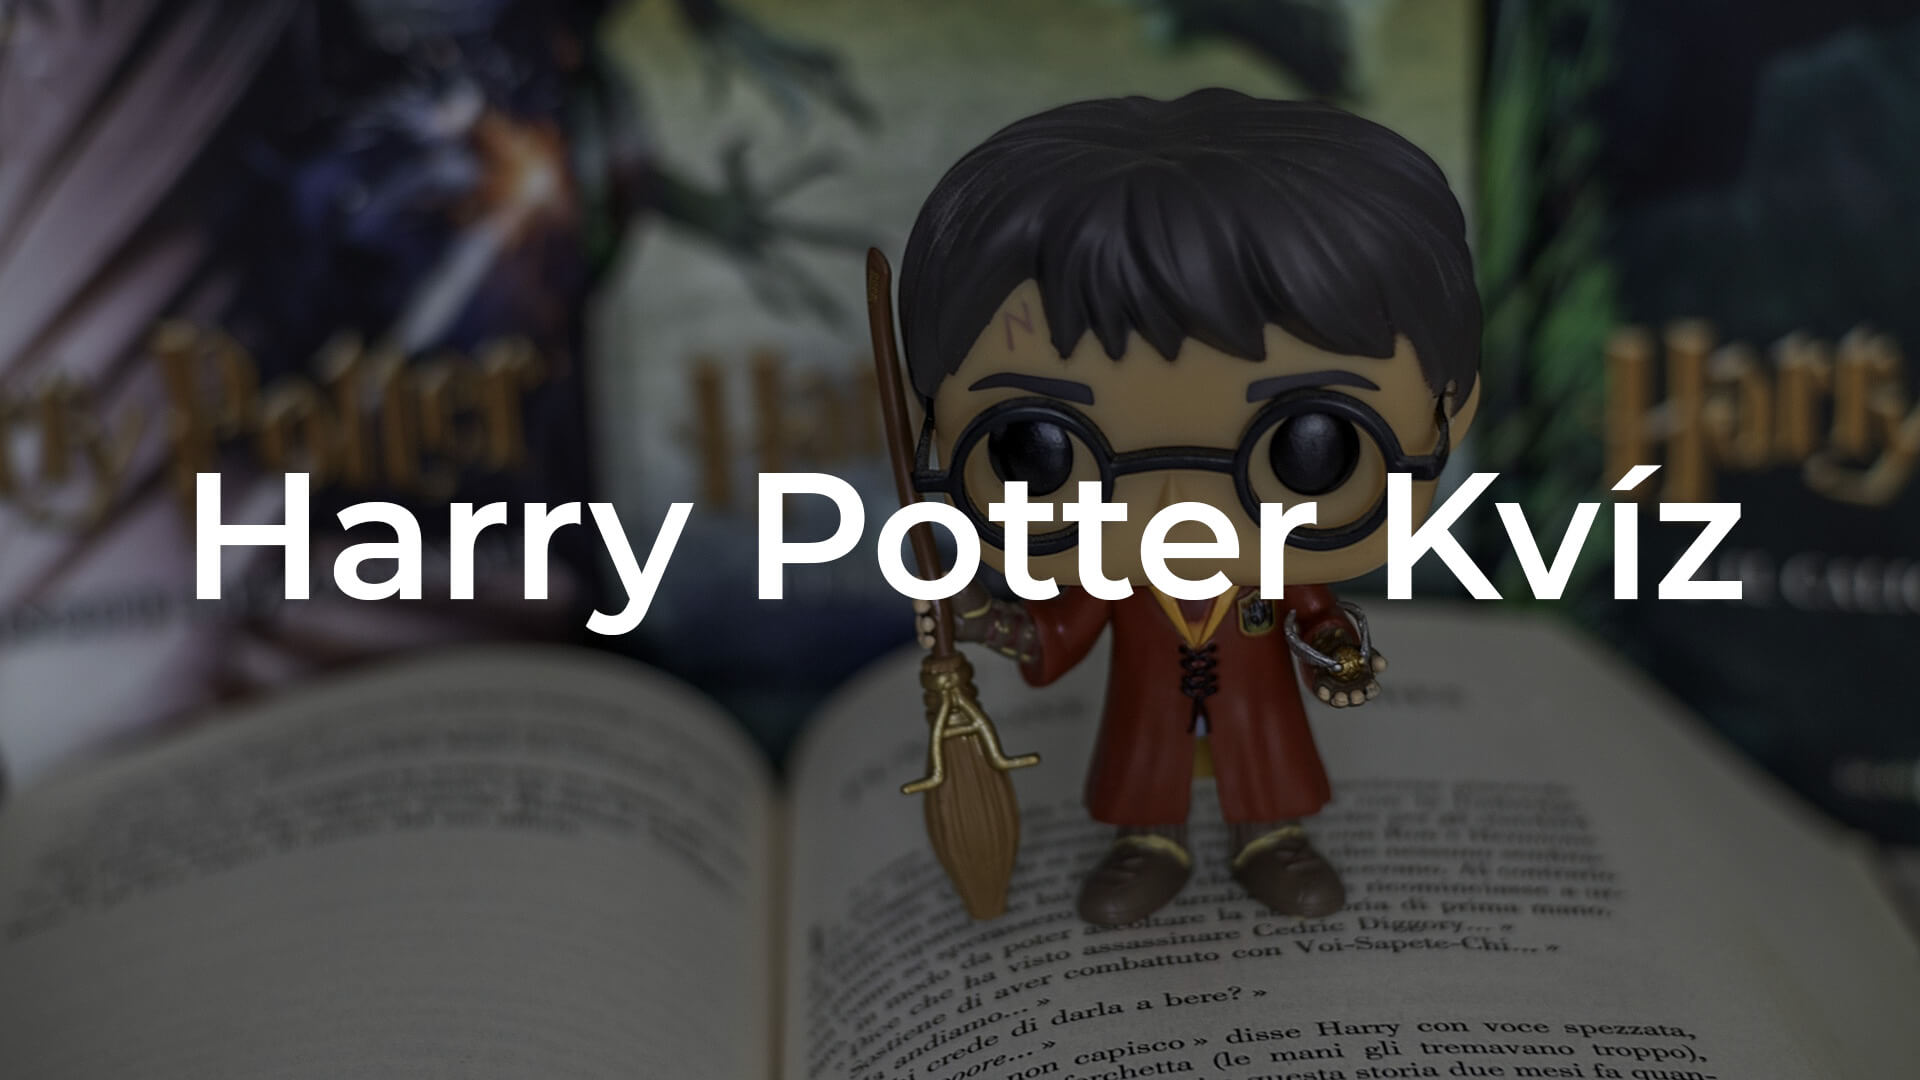 Milyen jól ismered Harryt? – Harry Potter kvíz